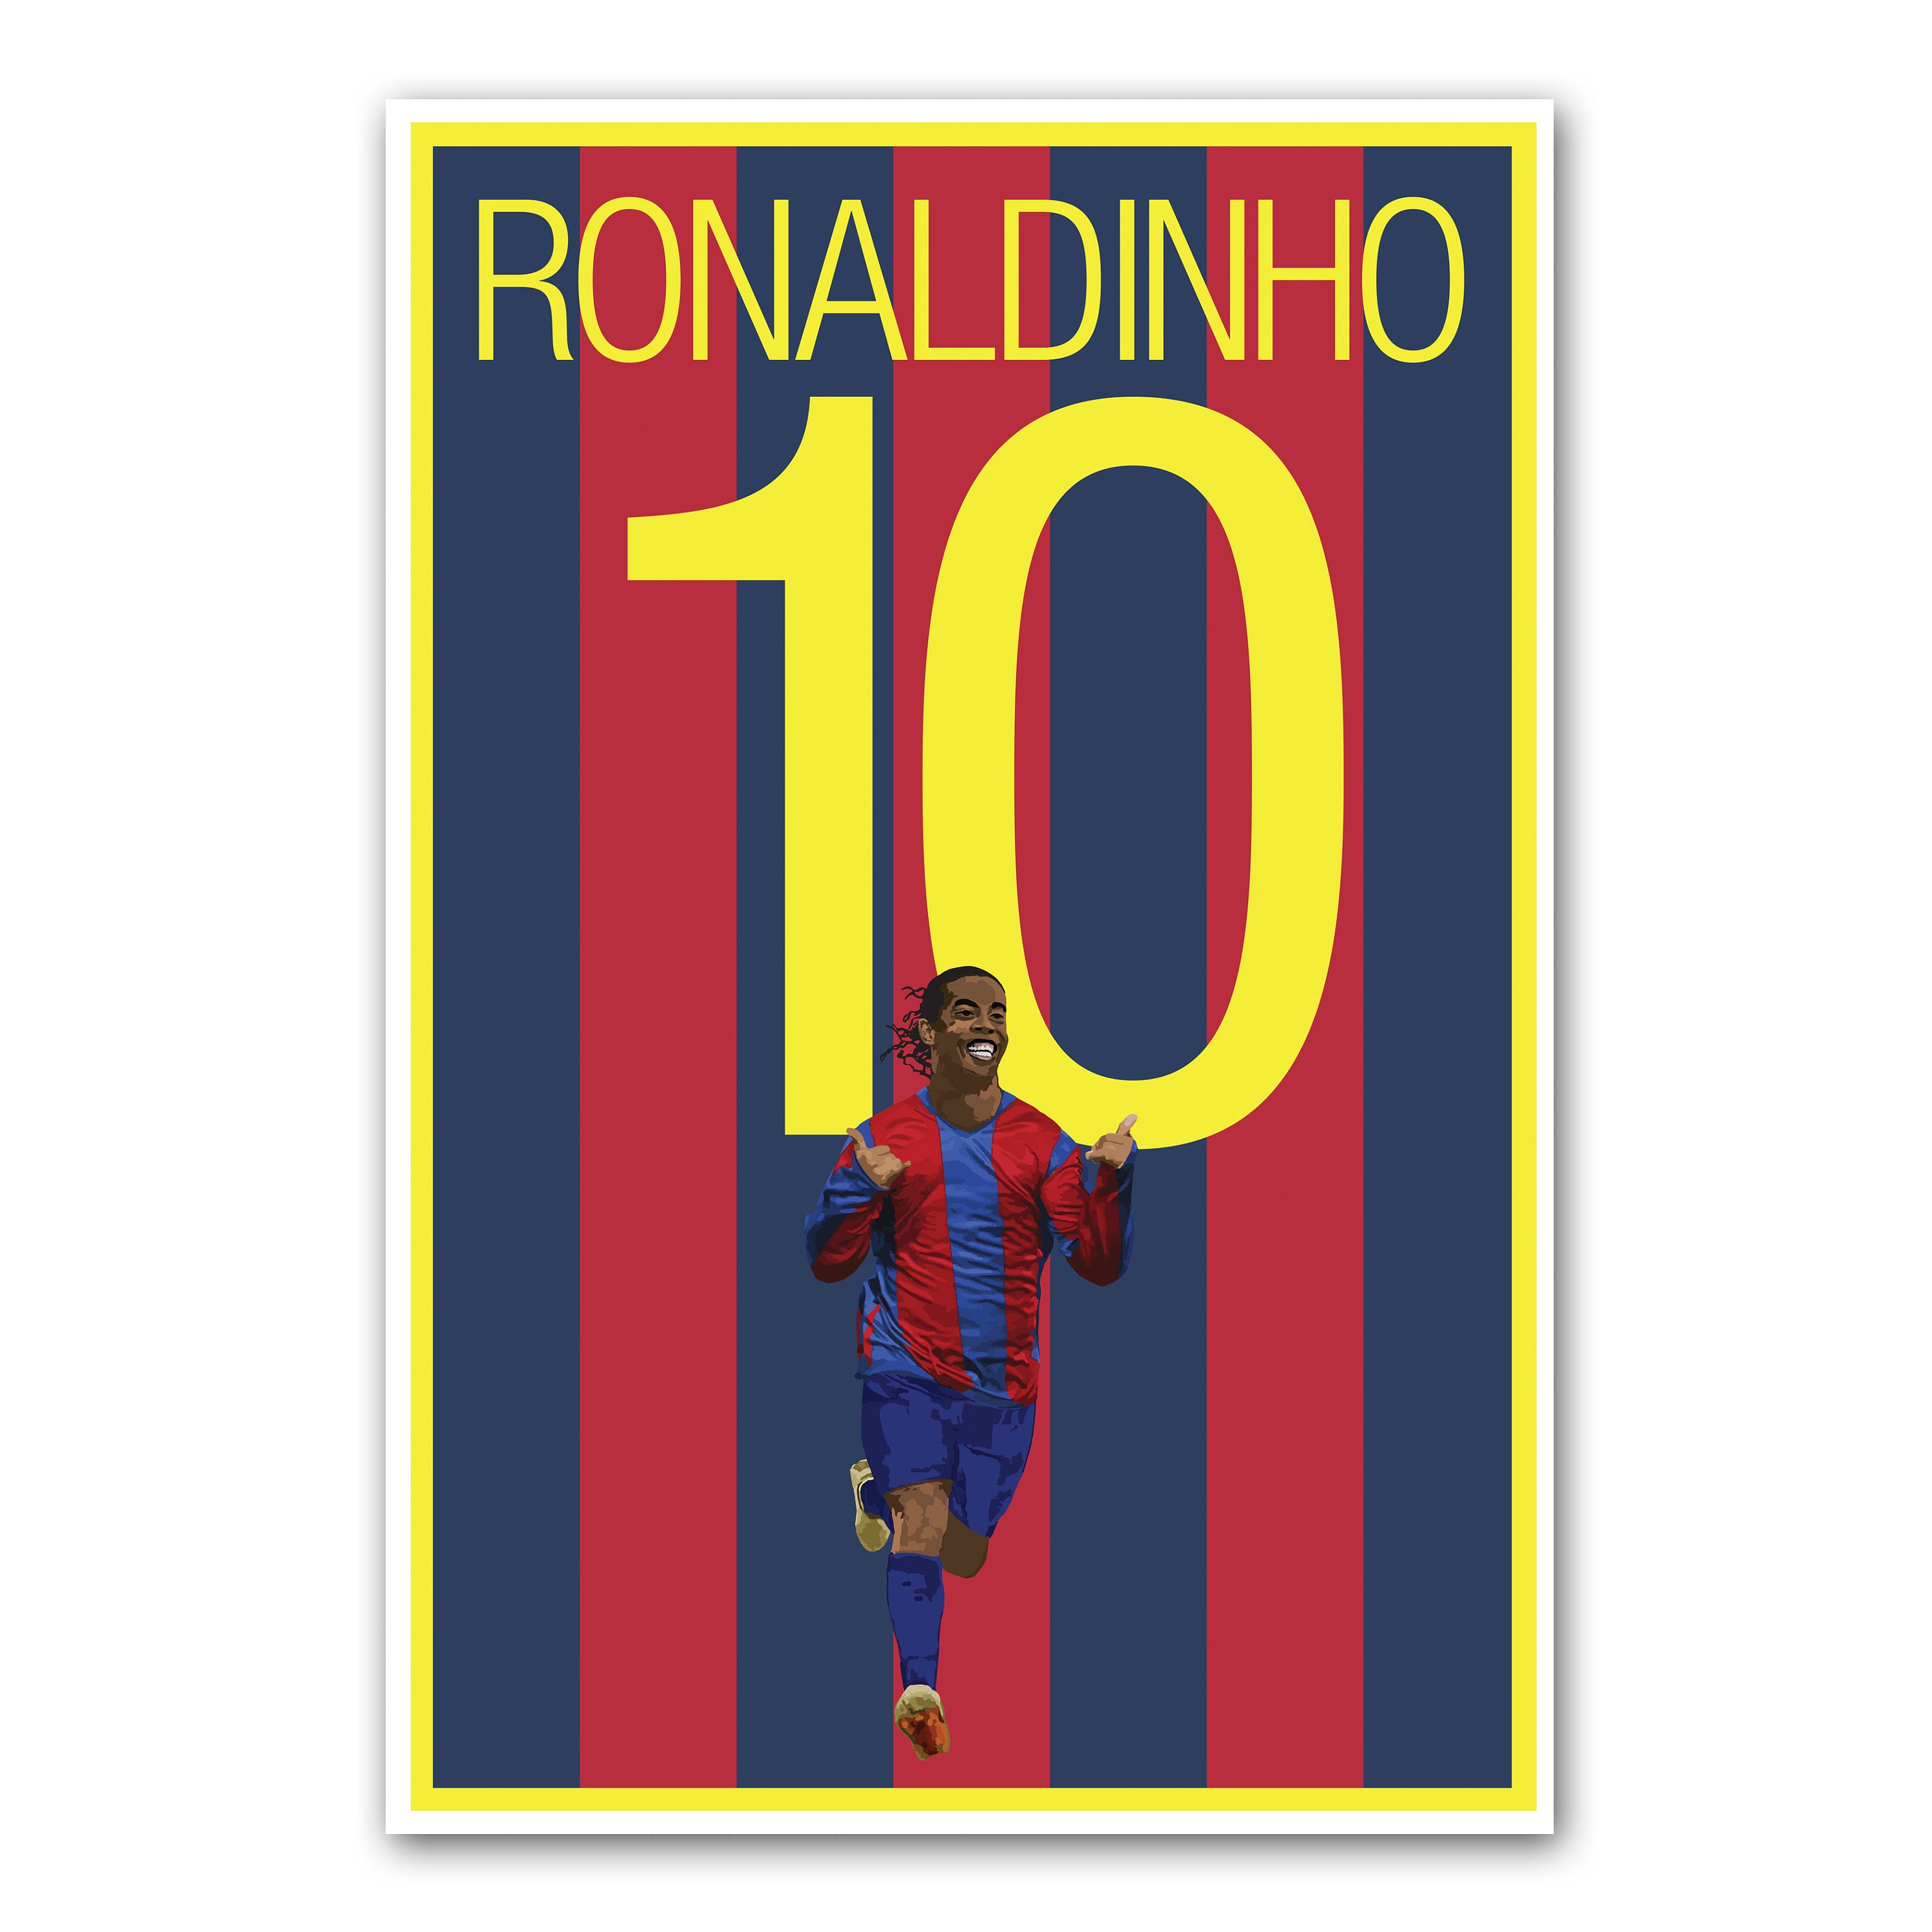 Ronaldihno Poster Barcelona Soccer Poster Unframed - Etsy